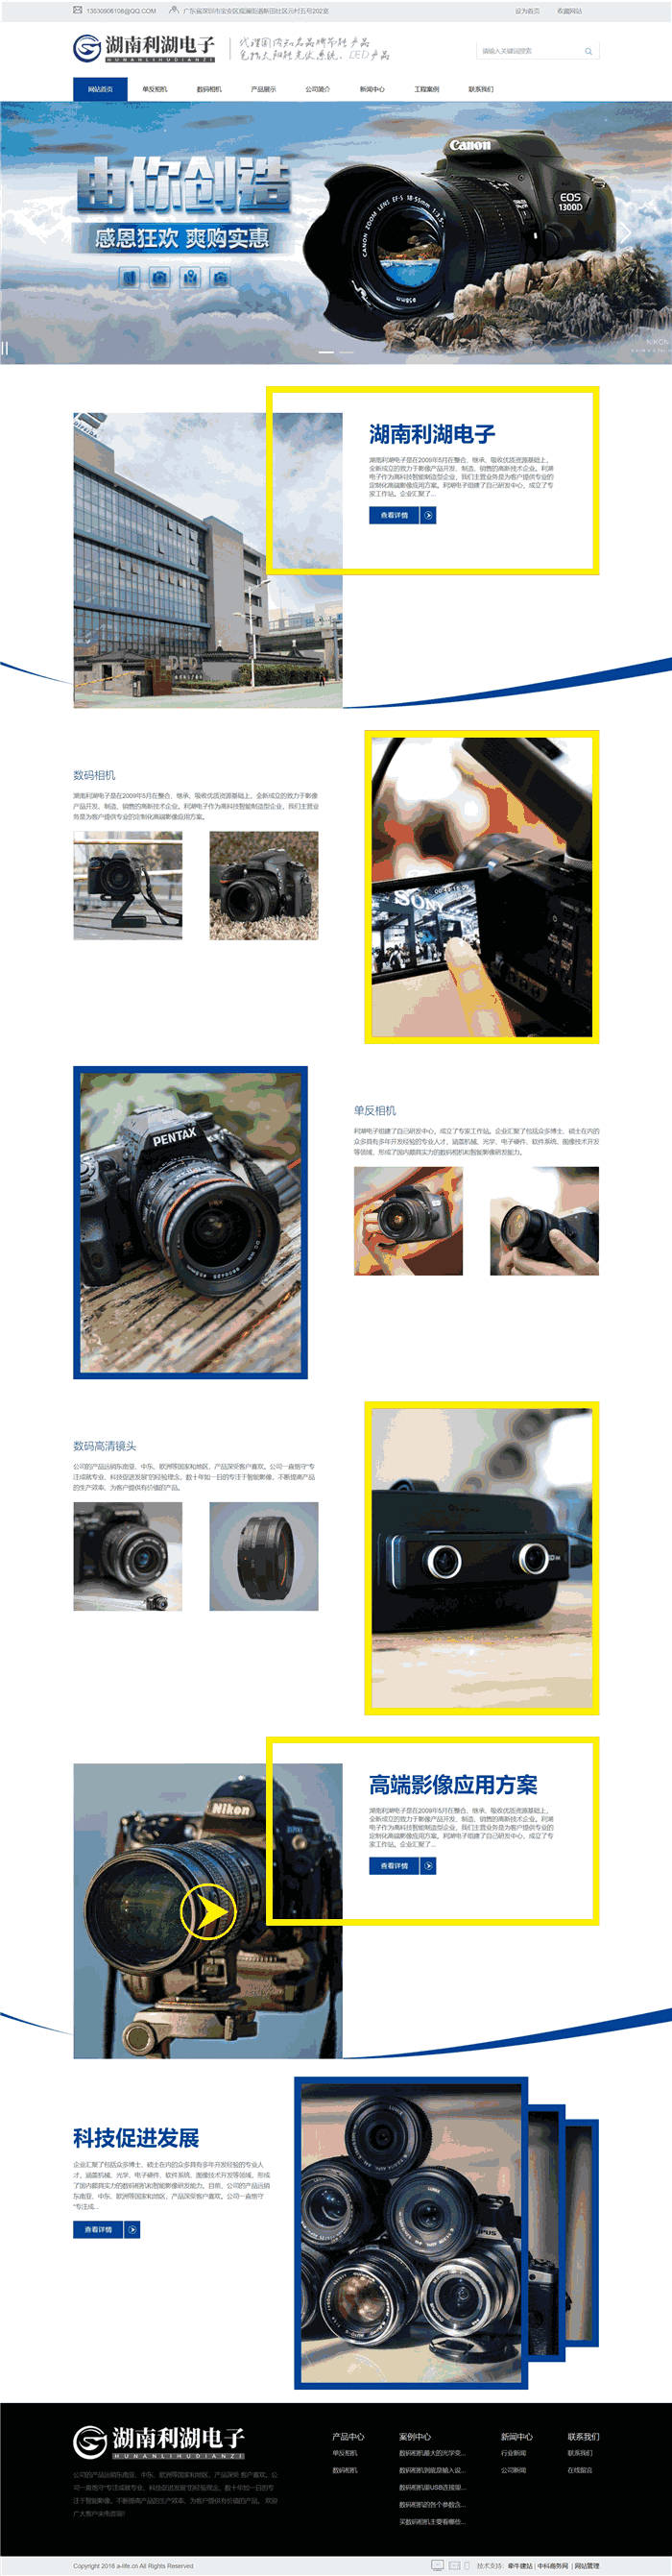 多合一单反相机数码相机网站WP网站模板效果图